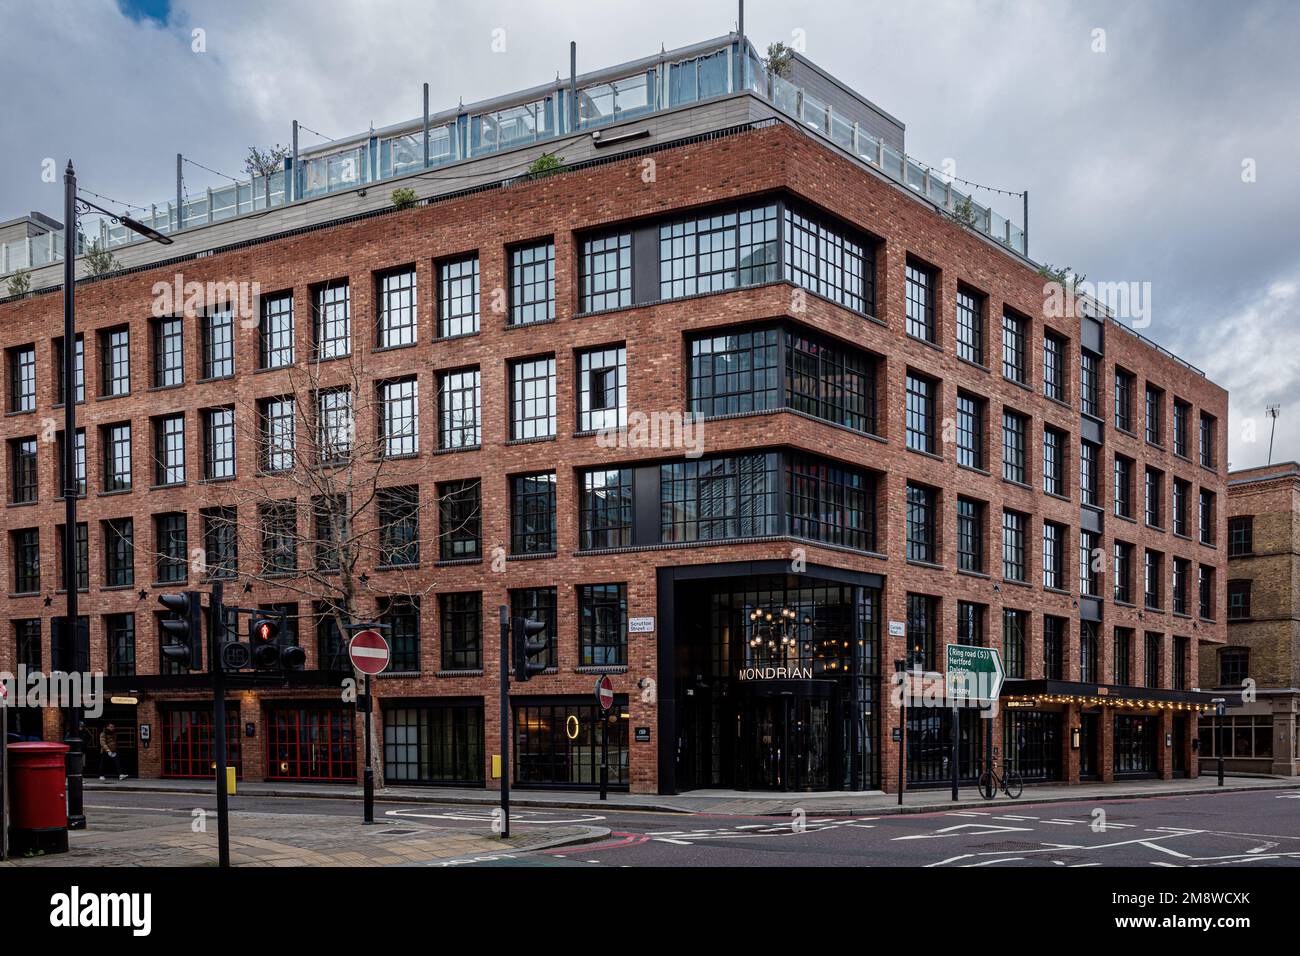 Das Mondrian Hotel Shoreditch East London. Eröffnet 2017 als The Curtain Hotel, umbenannt in Mondrian Hotel 2021. Architekten Dexter Moren Associates. Stockfoto